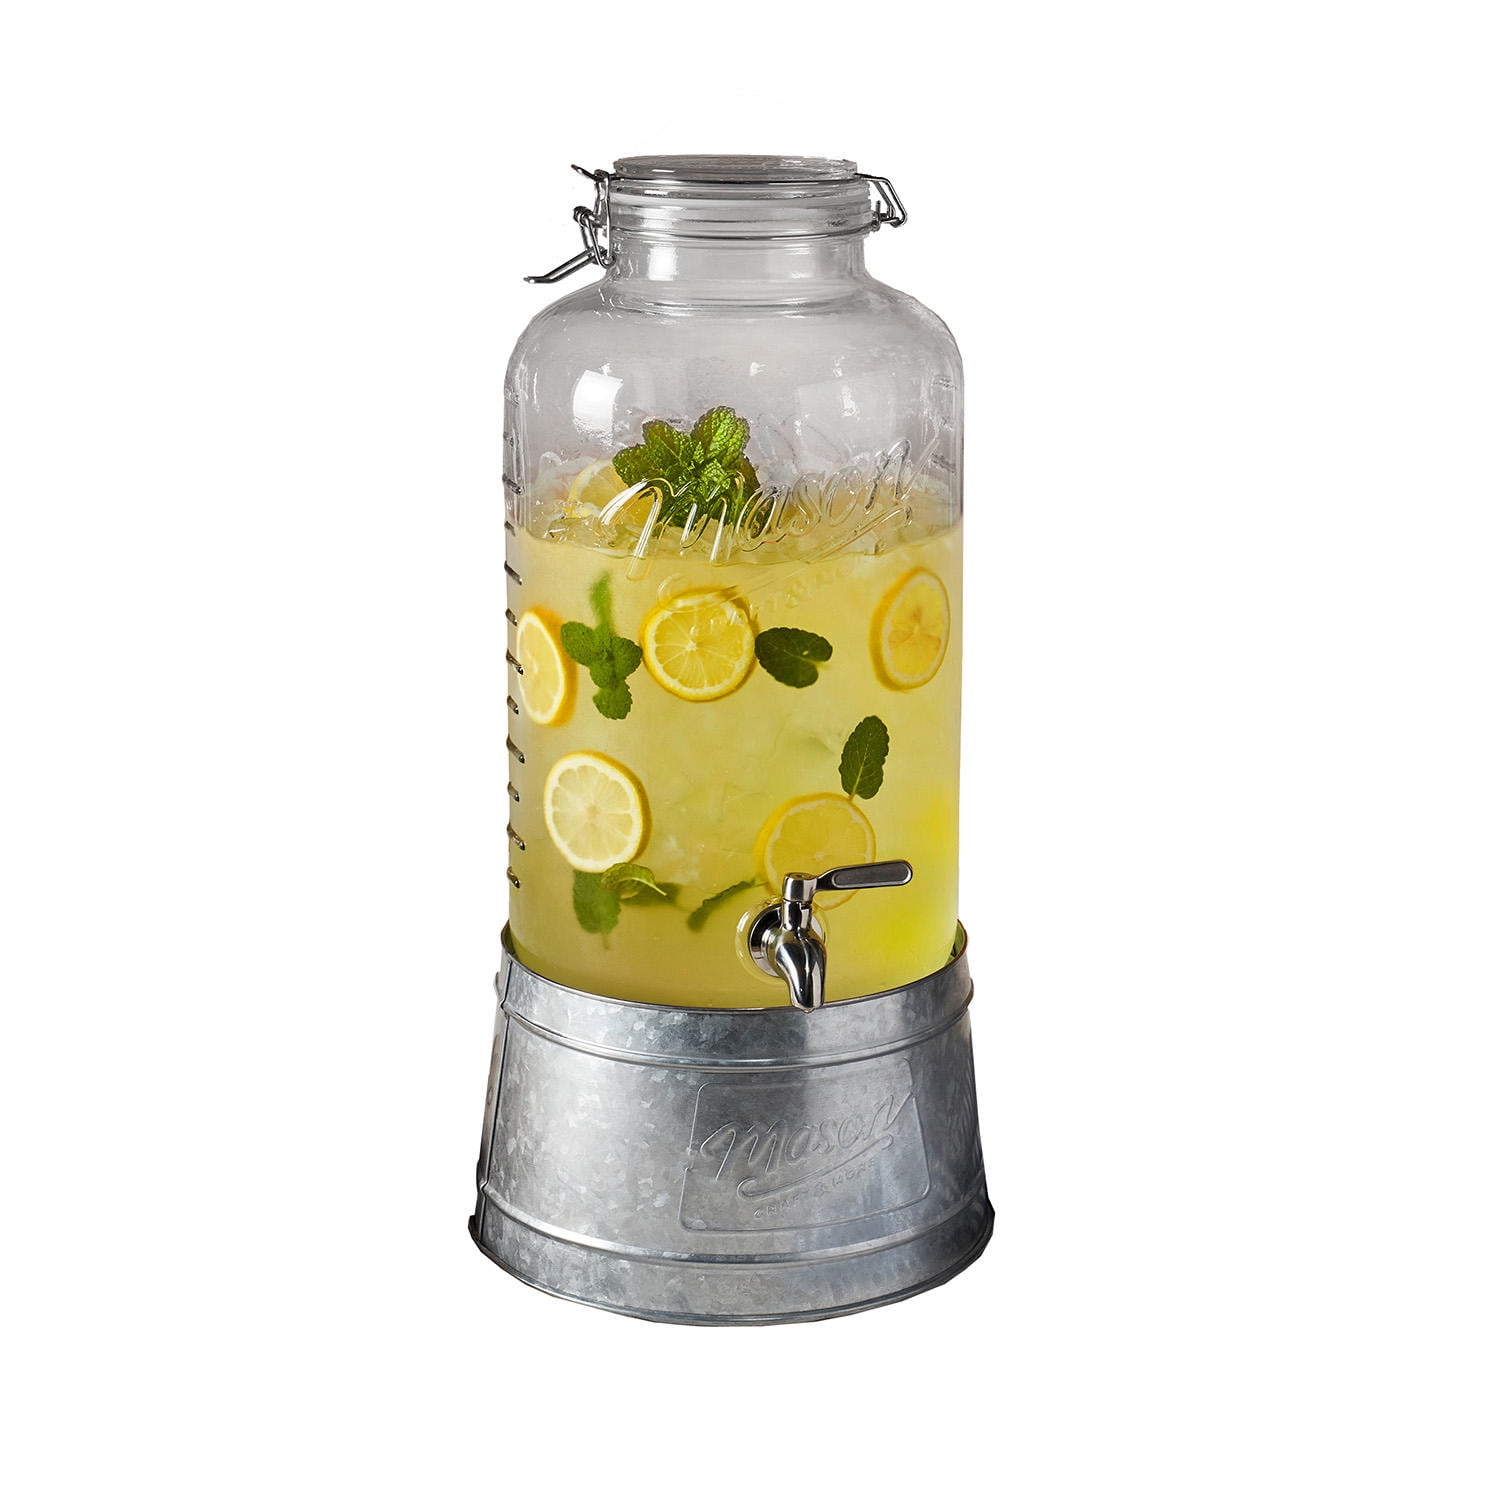 Mason Jar Beverage Dispenser with Galvanized Stand - Sam's Club